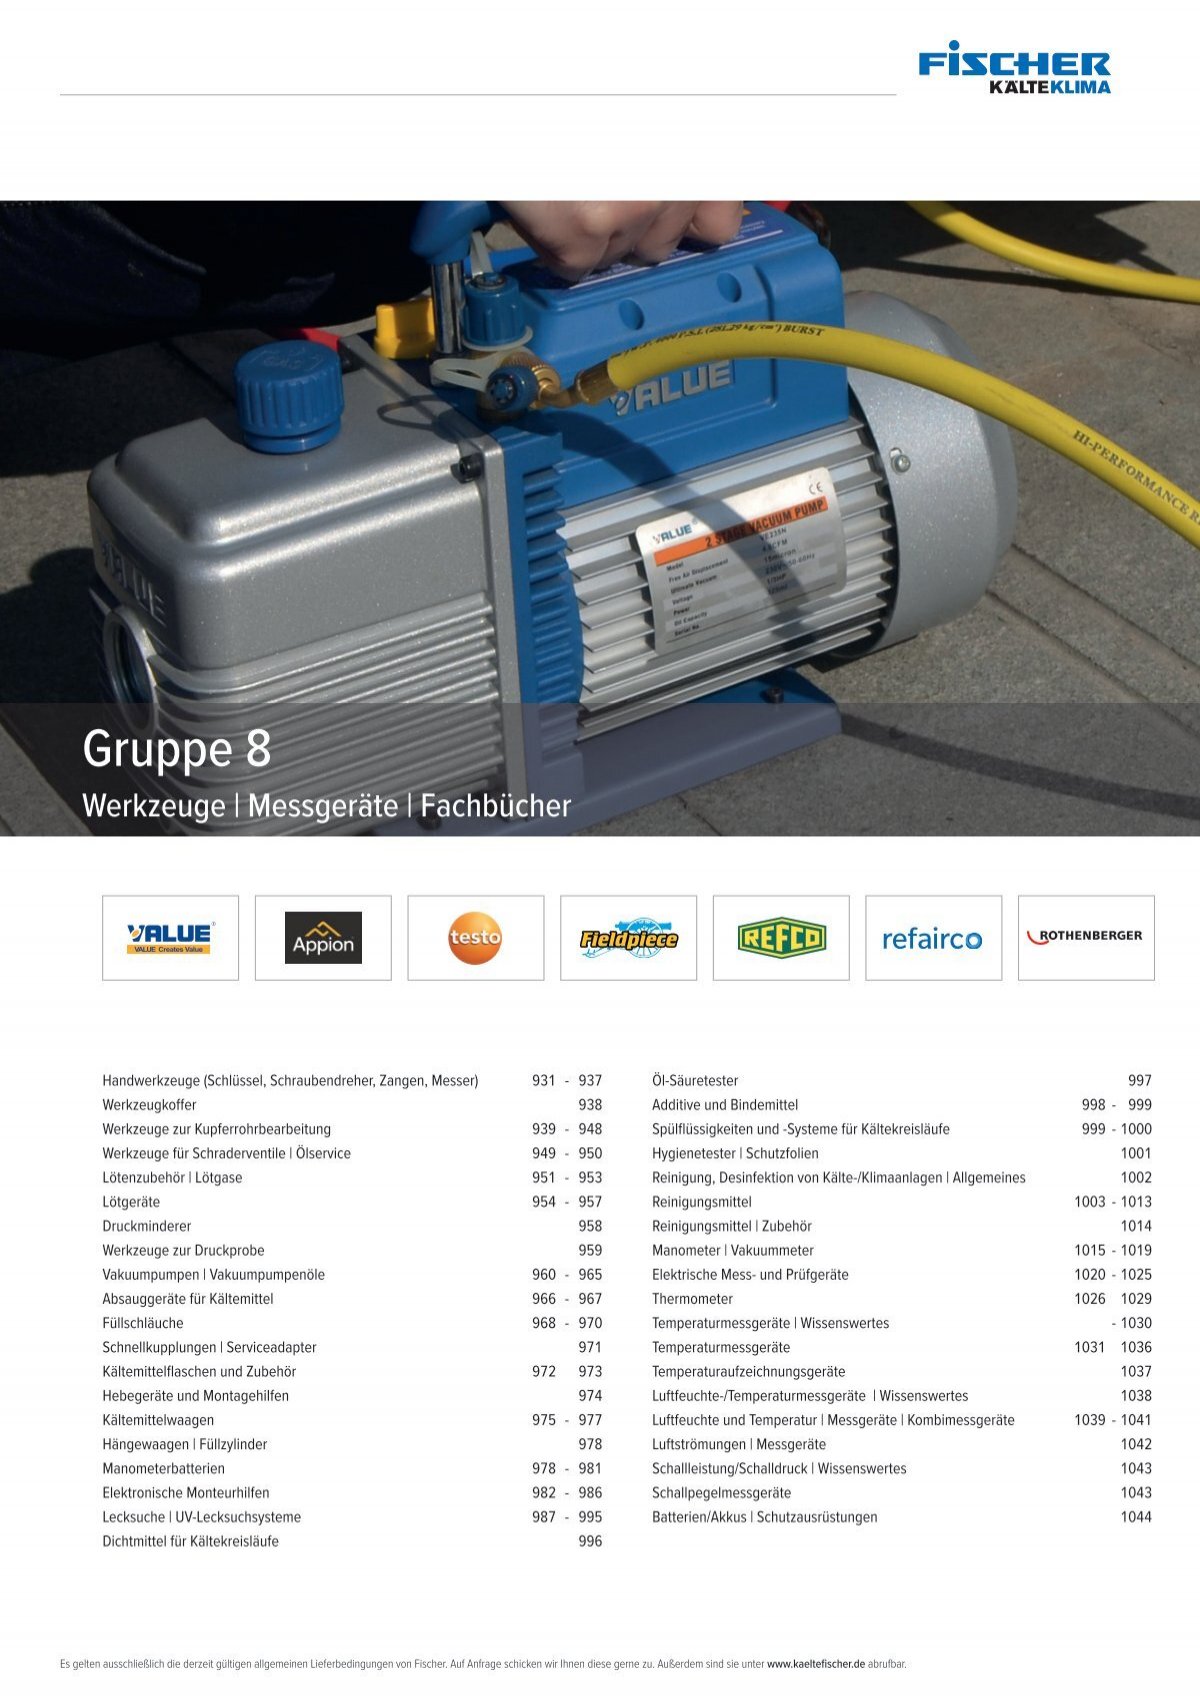 Fischer Katalog 32 // Gruppe 8 // Werkzeuge & Messgeräte